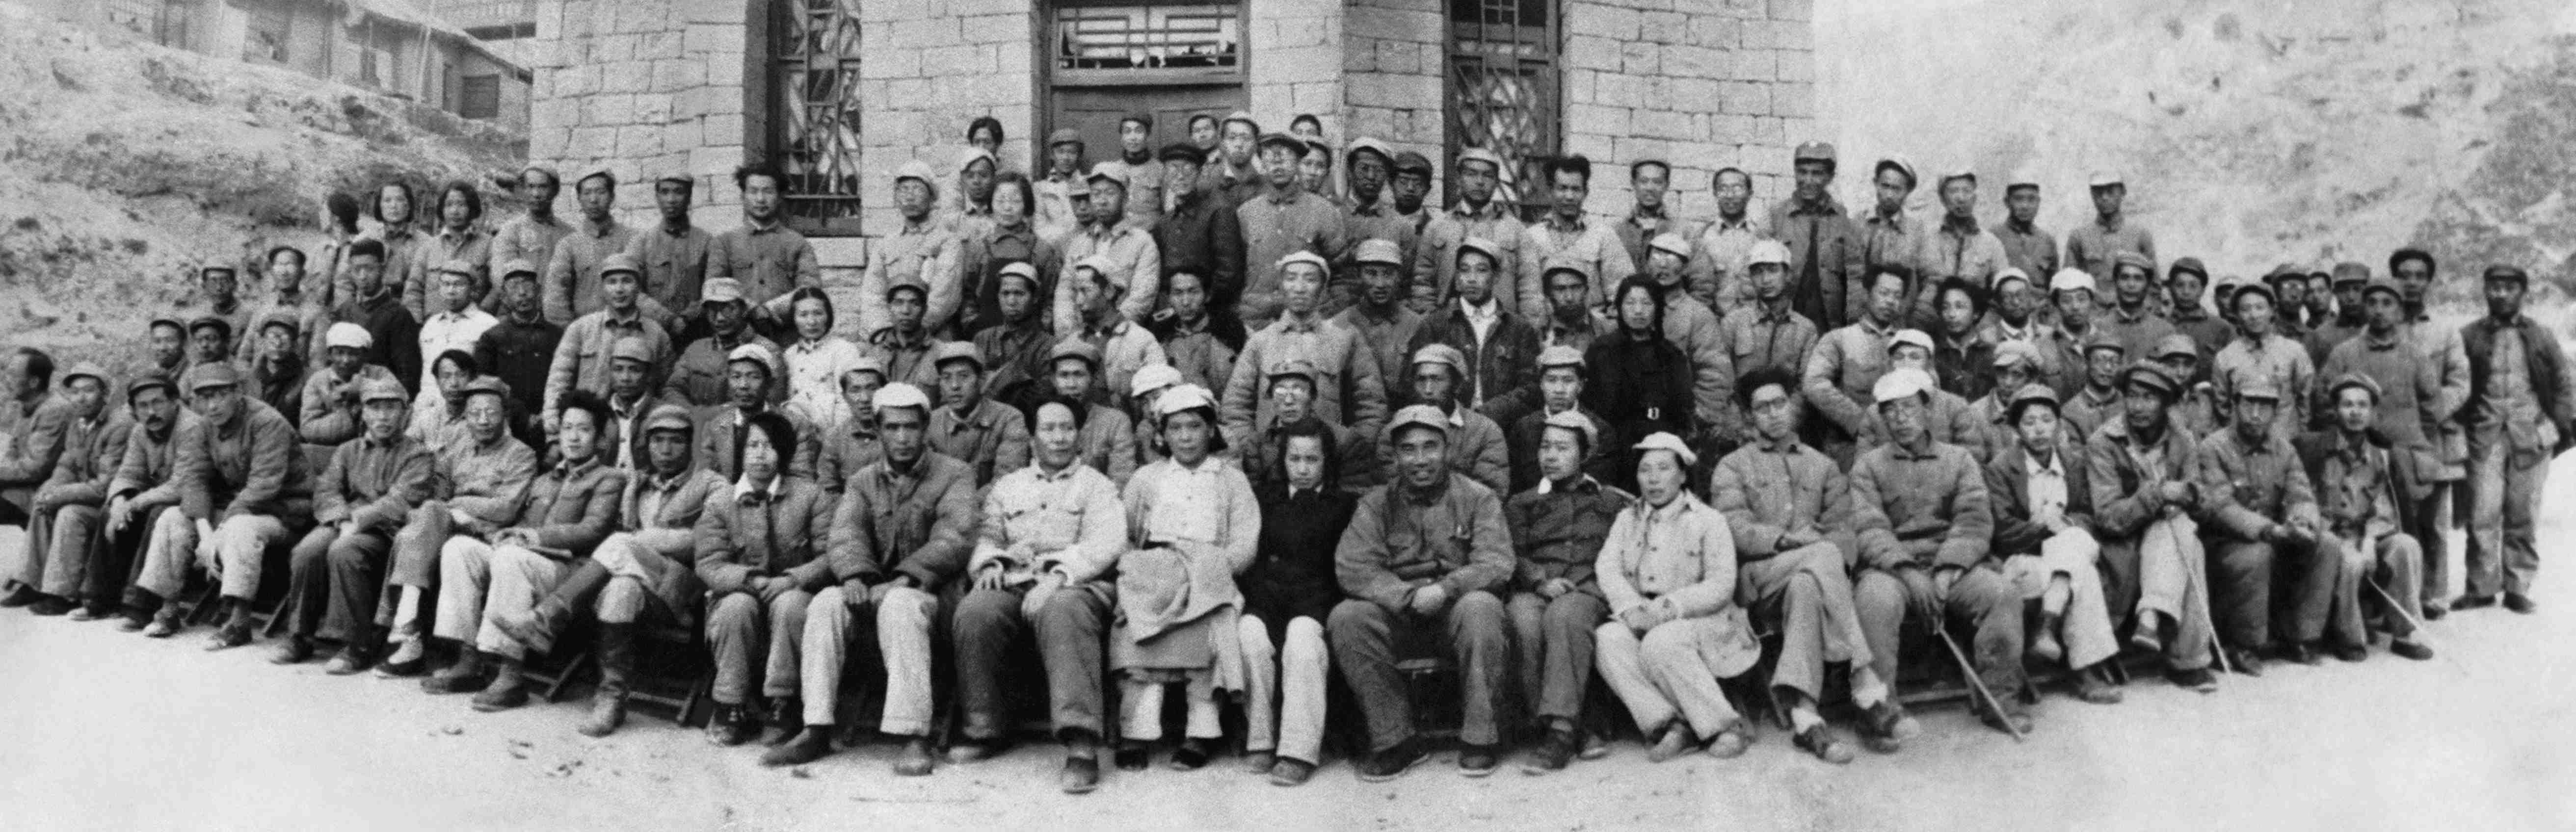 延安文艺座谈会代表合影（摄影） 31×95厘米 1942年 吴印咸 中国美术馆藏